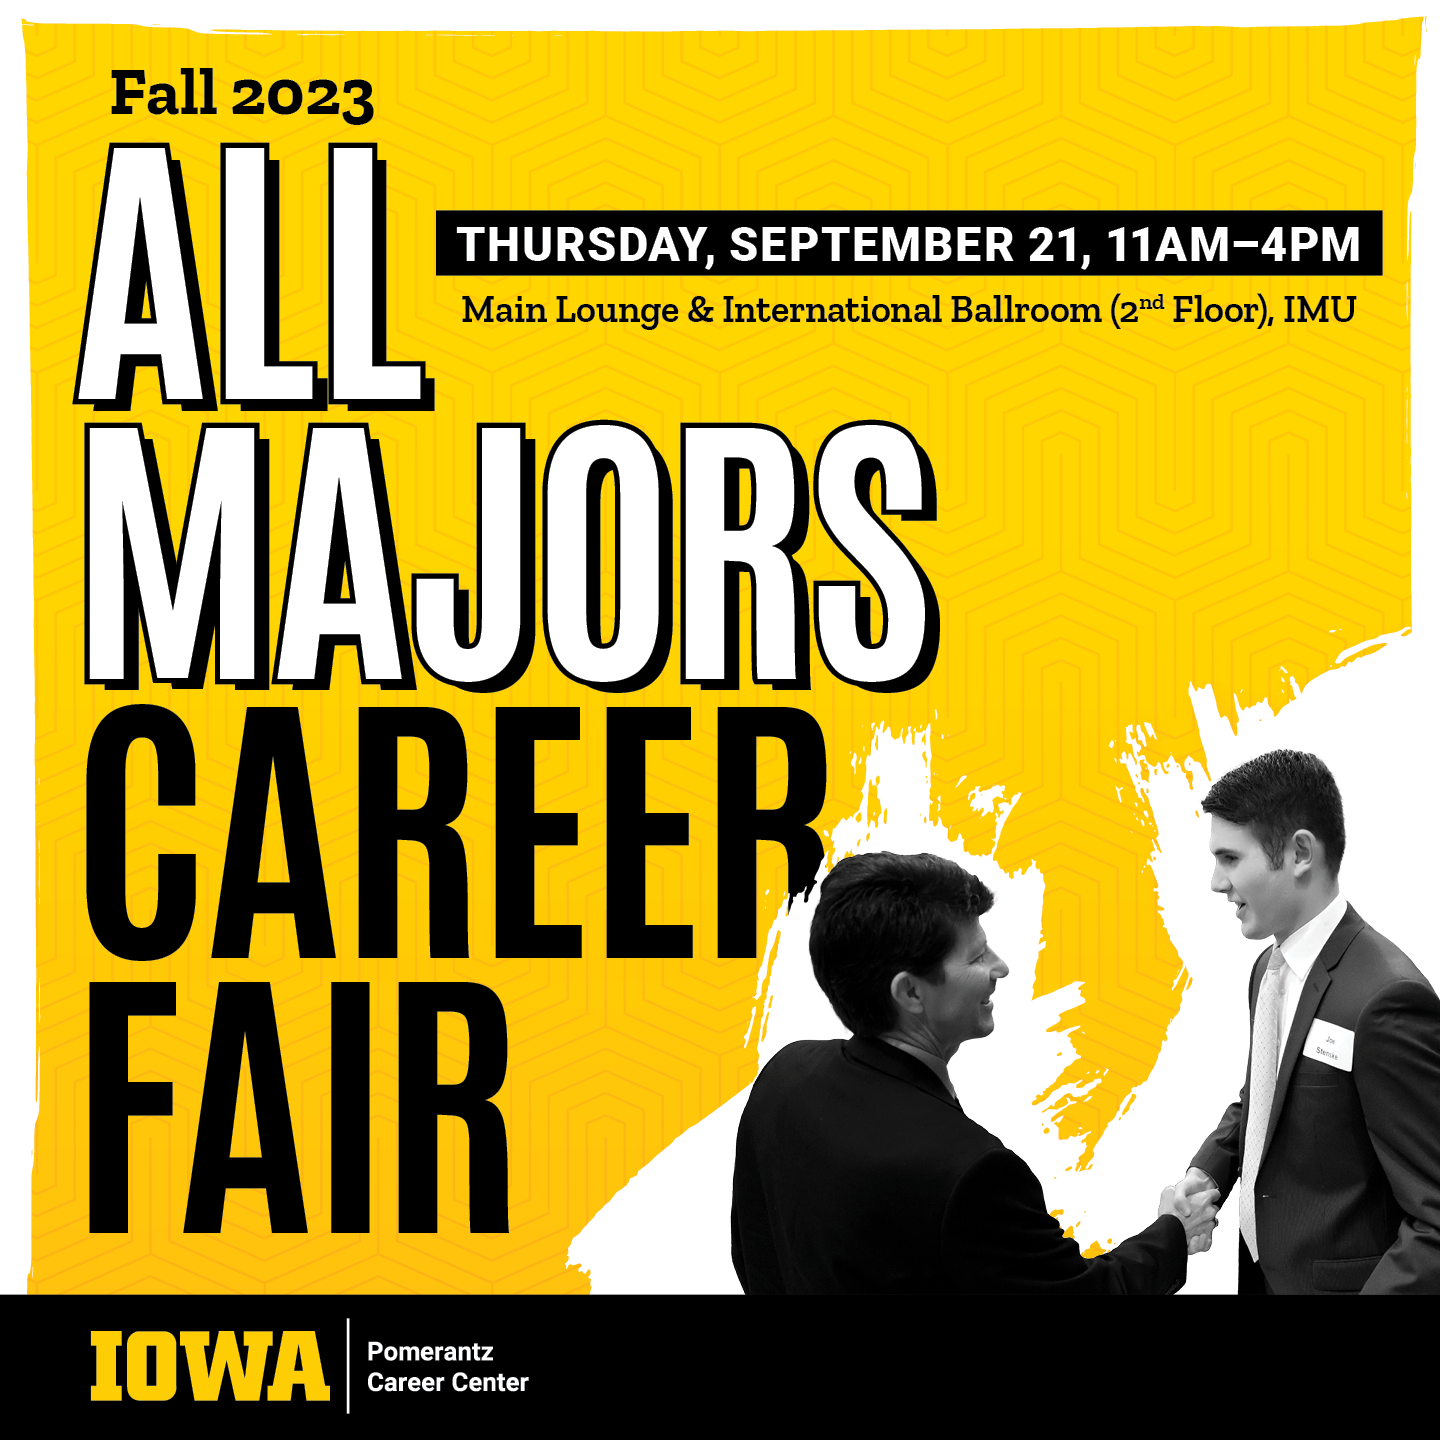 All Majors Career Fair Fall 2023